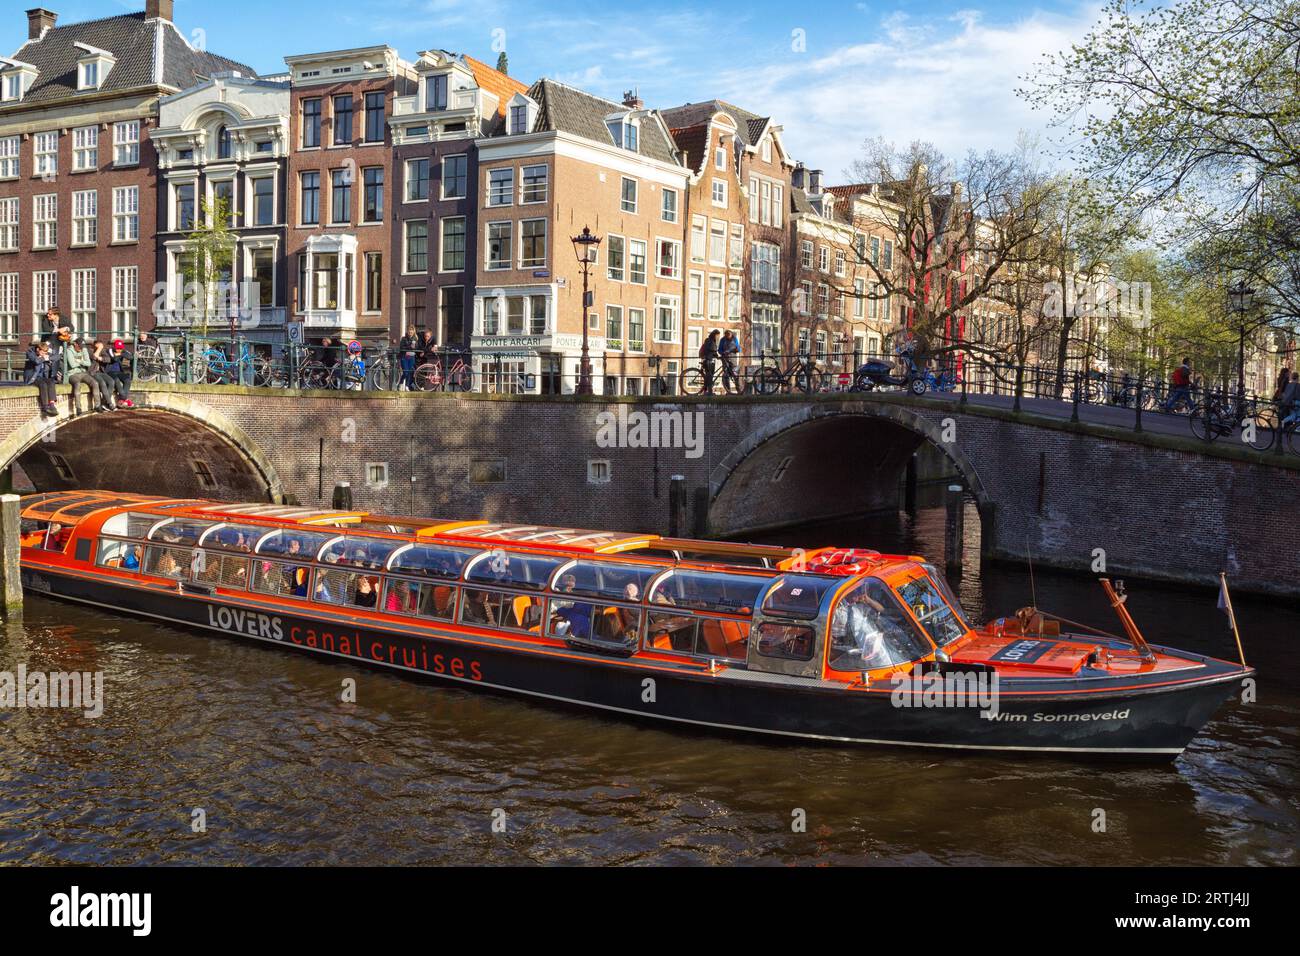 Stadtbesichtigung in einem Boot auf einem Kanal in Amsterdam, Niederlande im Frühjahr. Sightseeing-Boot auf einem Kanal in Amsterdam, Niederlande im Frühling Stockfoto